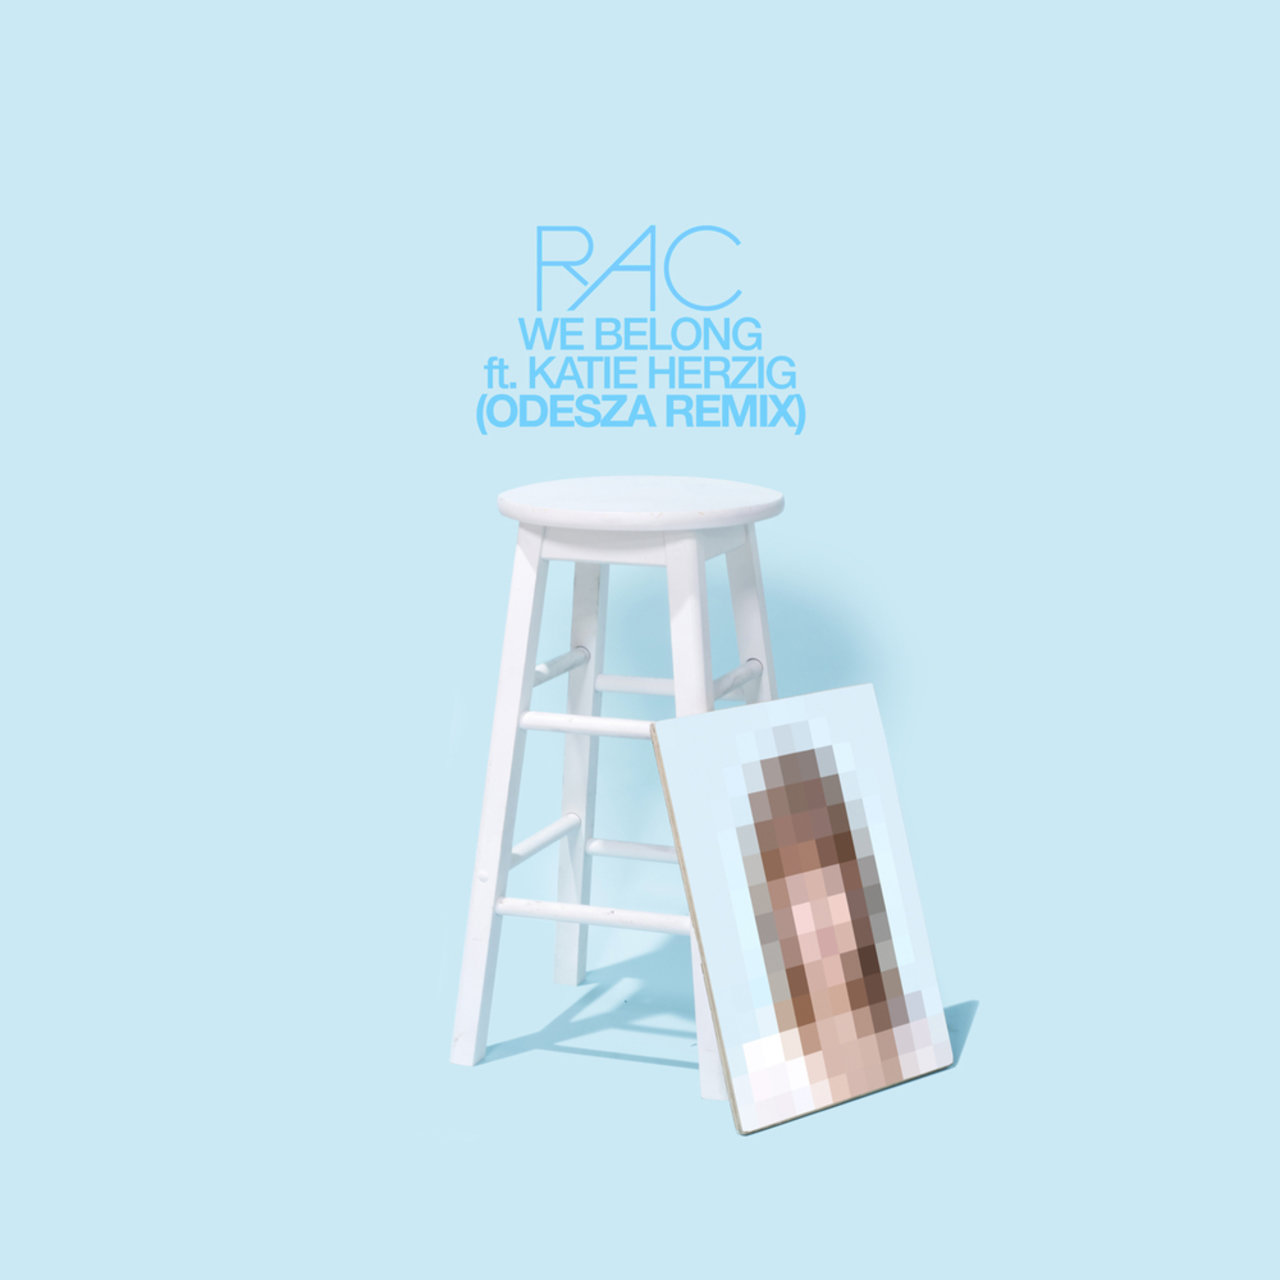 RAC featuring Katie Herzig — We Belong (ODESZA Remix) cover artwork